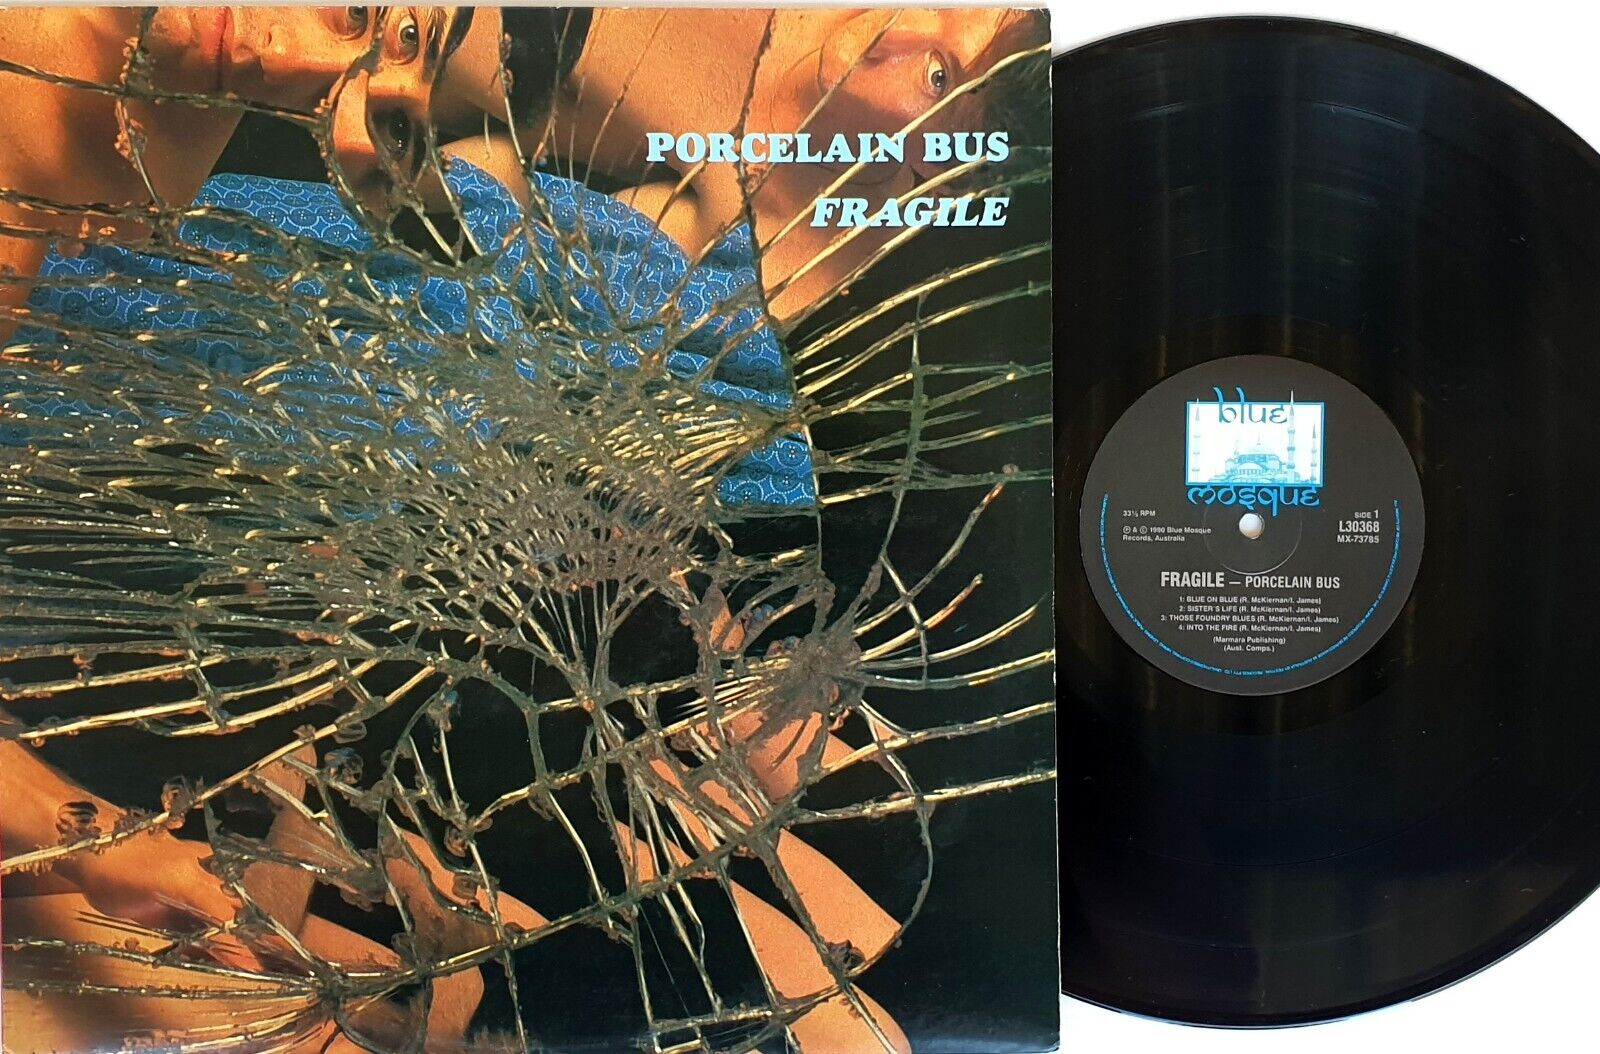 Porcelain Bus – Fragile Vinyl LP 1990 Blue Mosque Records Australia – L 30368